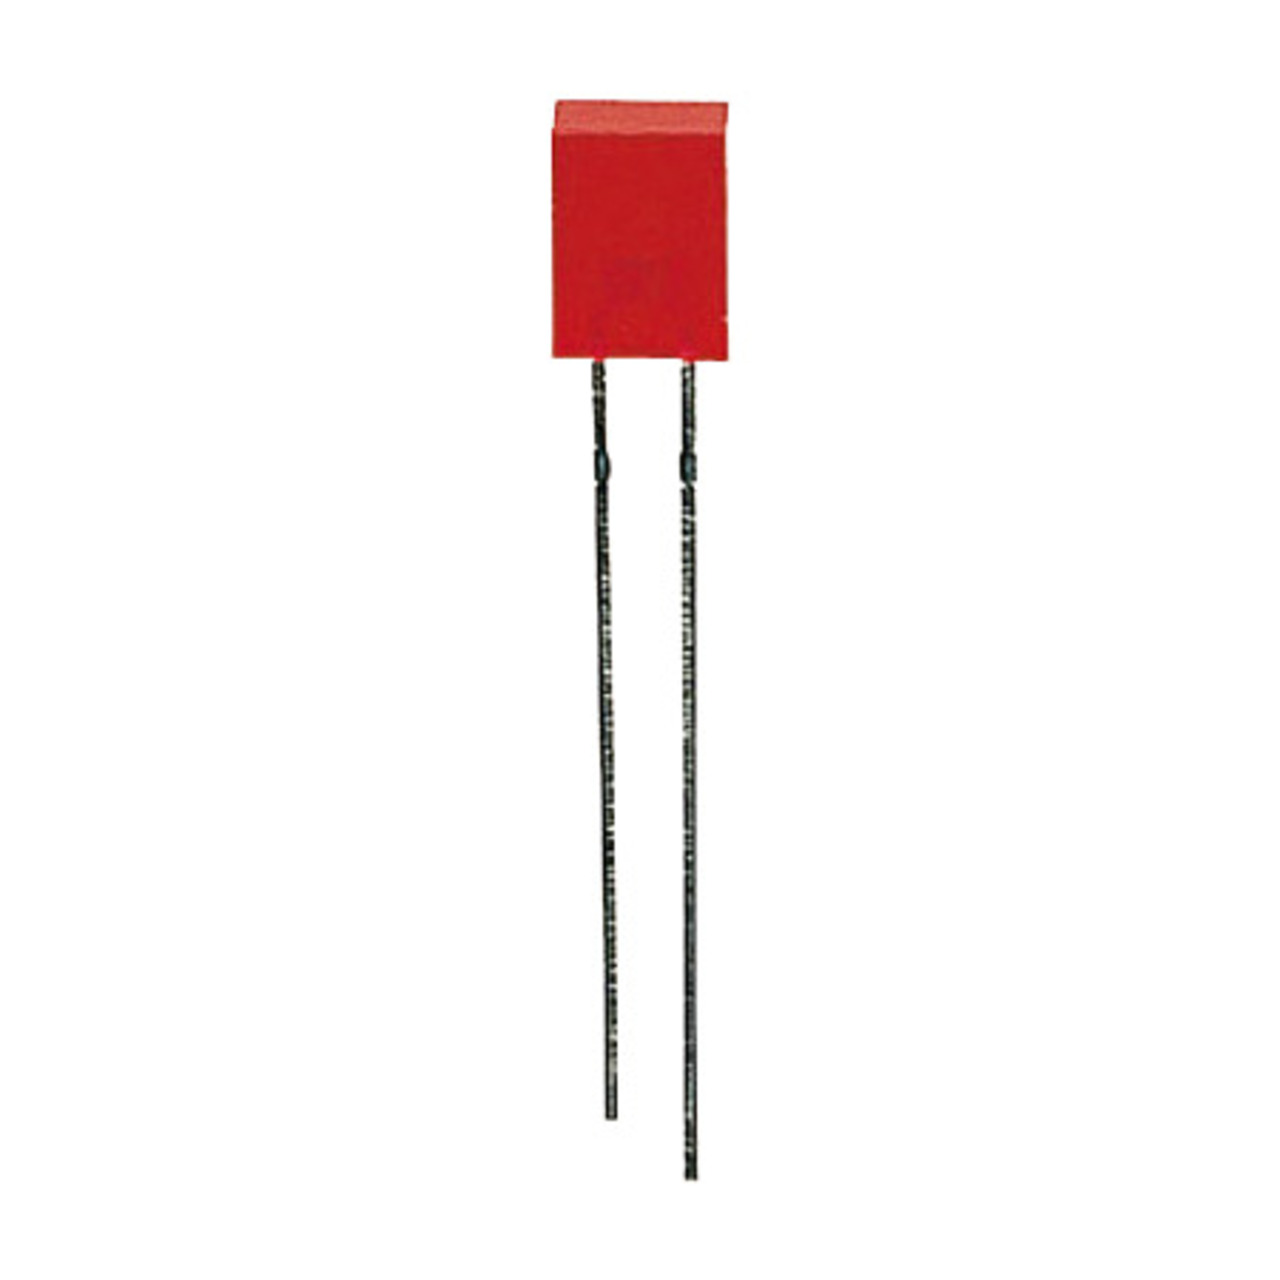 10x LED Rechteck 2 x 5 mm- Rot unter Komponenten